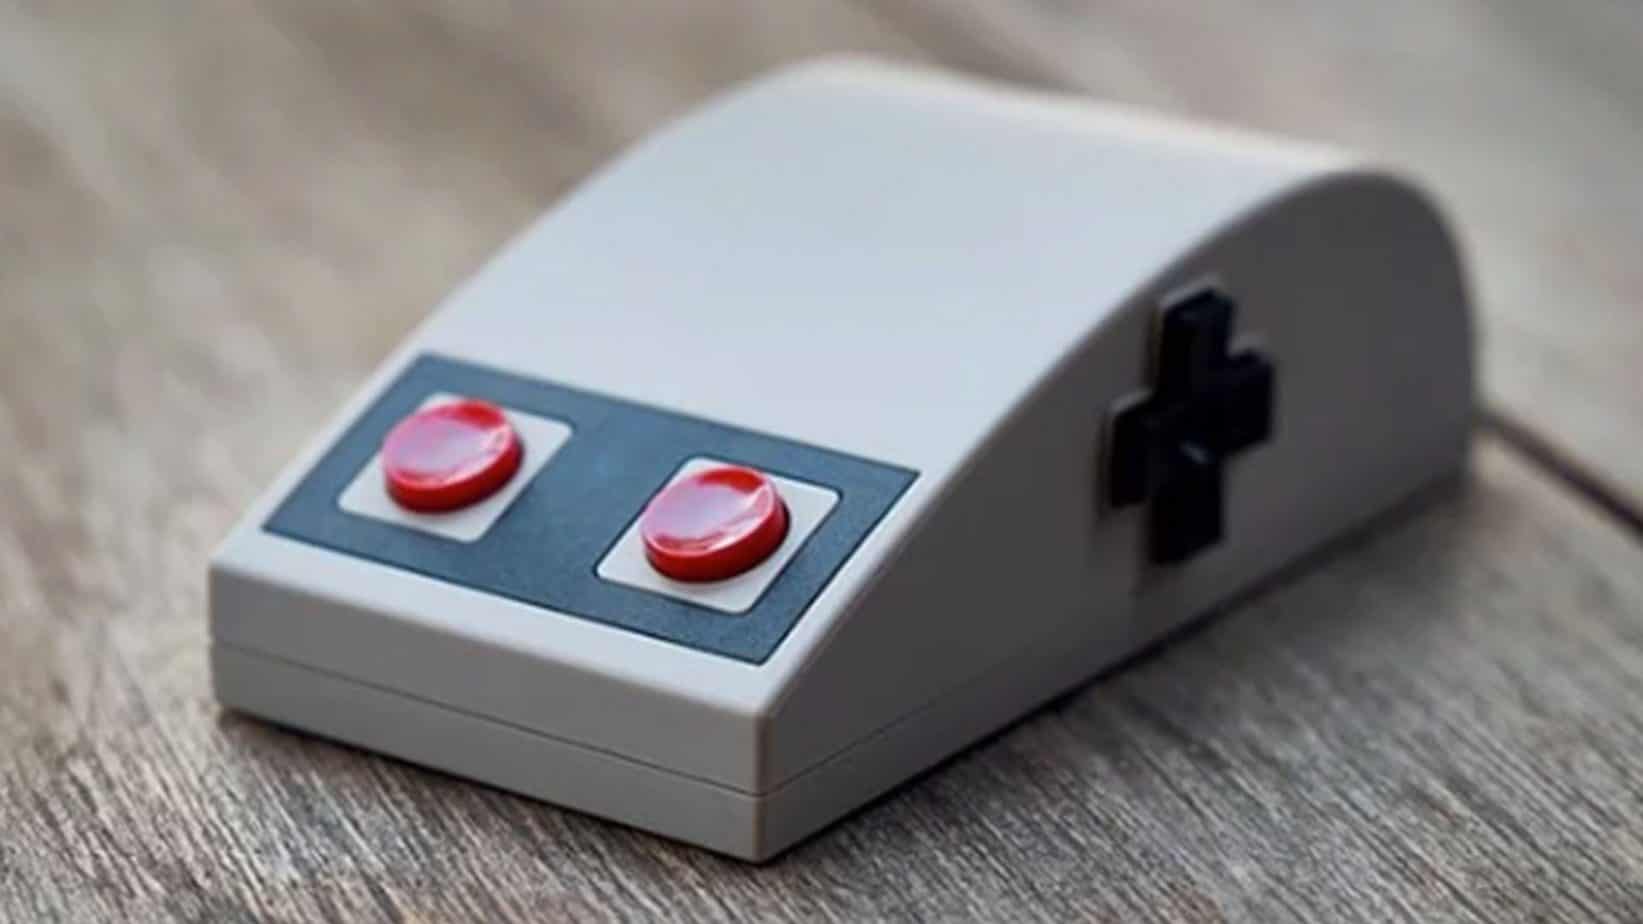 NES Mouse design